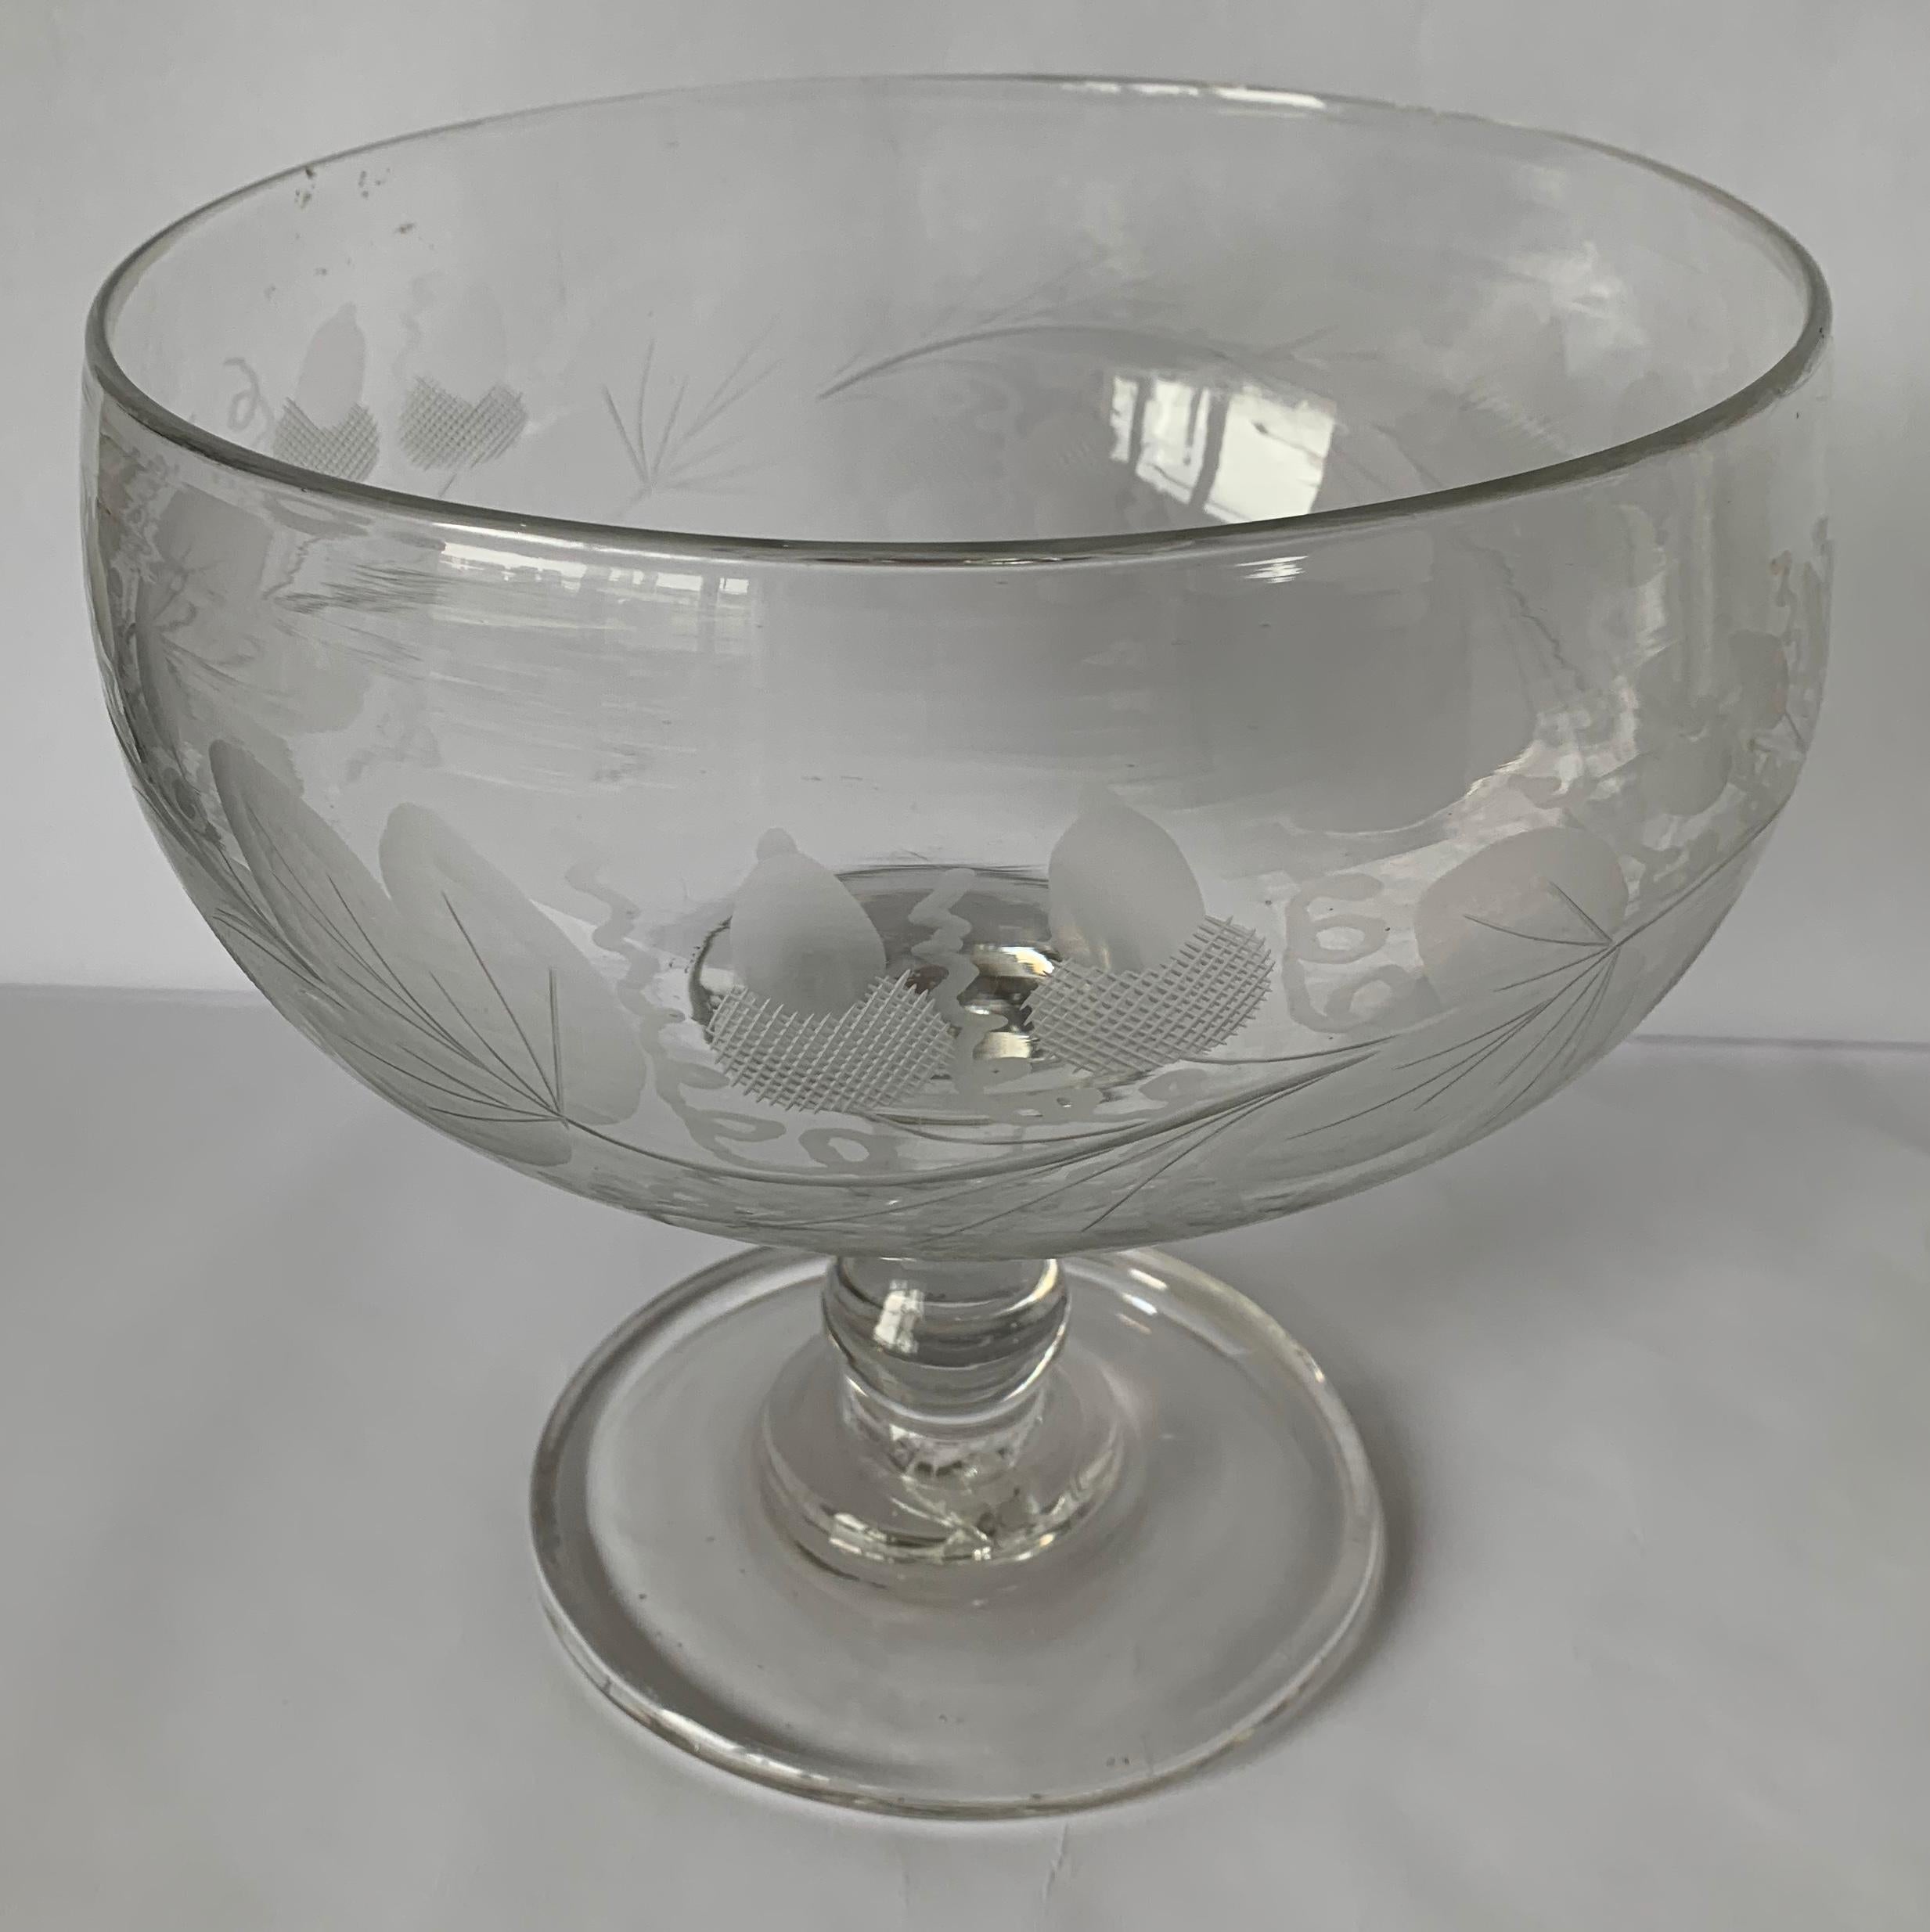 antikes amerikanisches Glas aus den 1840er Jahren mit Fuß, Kompott oder Schale. Freies mundgeblasenes Klarglas. Ganzflächig eingraviertes Eichel- und Eichenblattmotiv. Kein Herstellerzeichen.